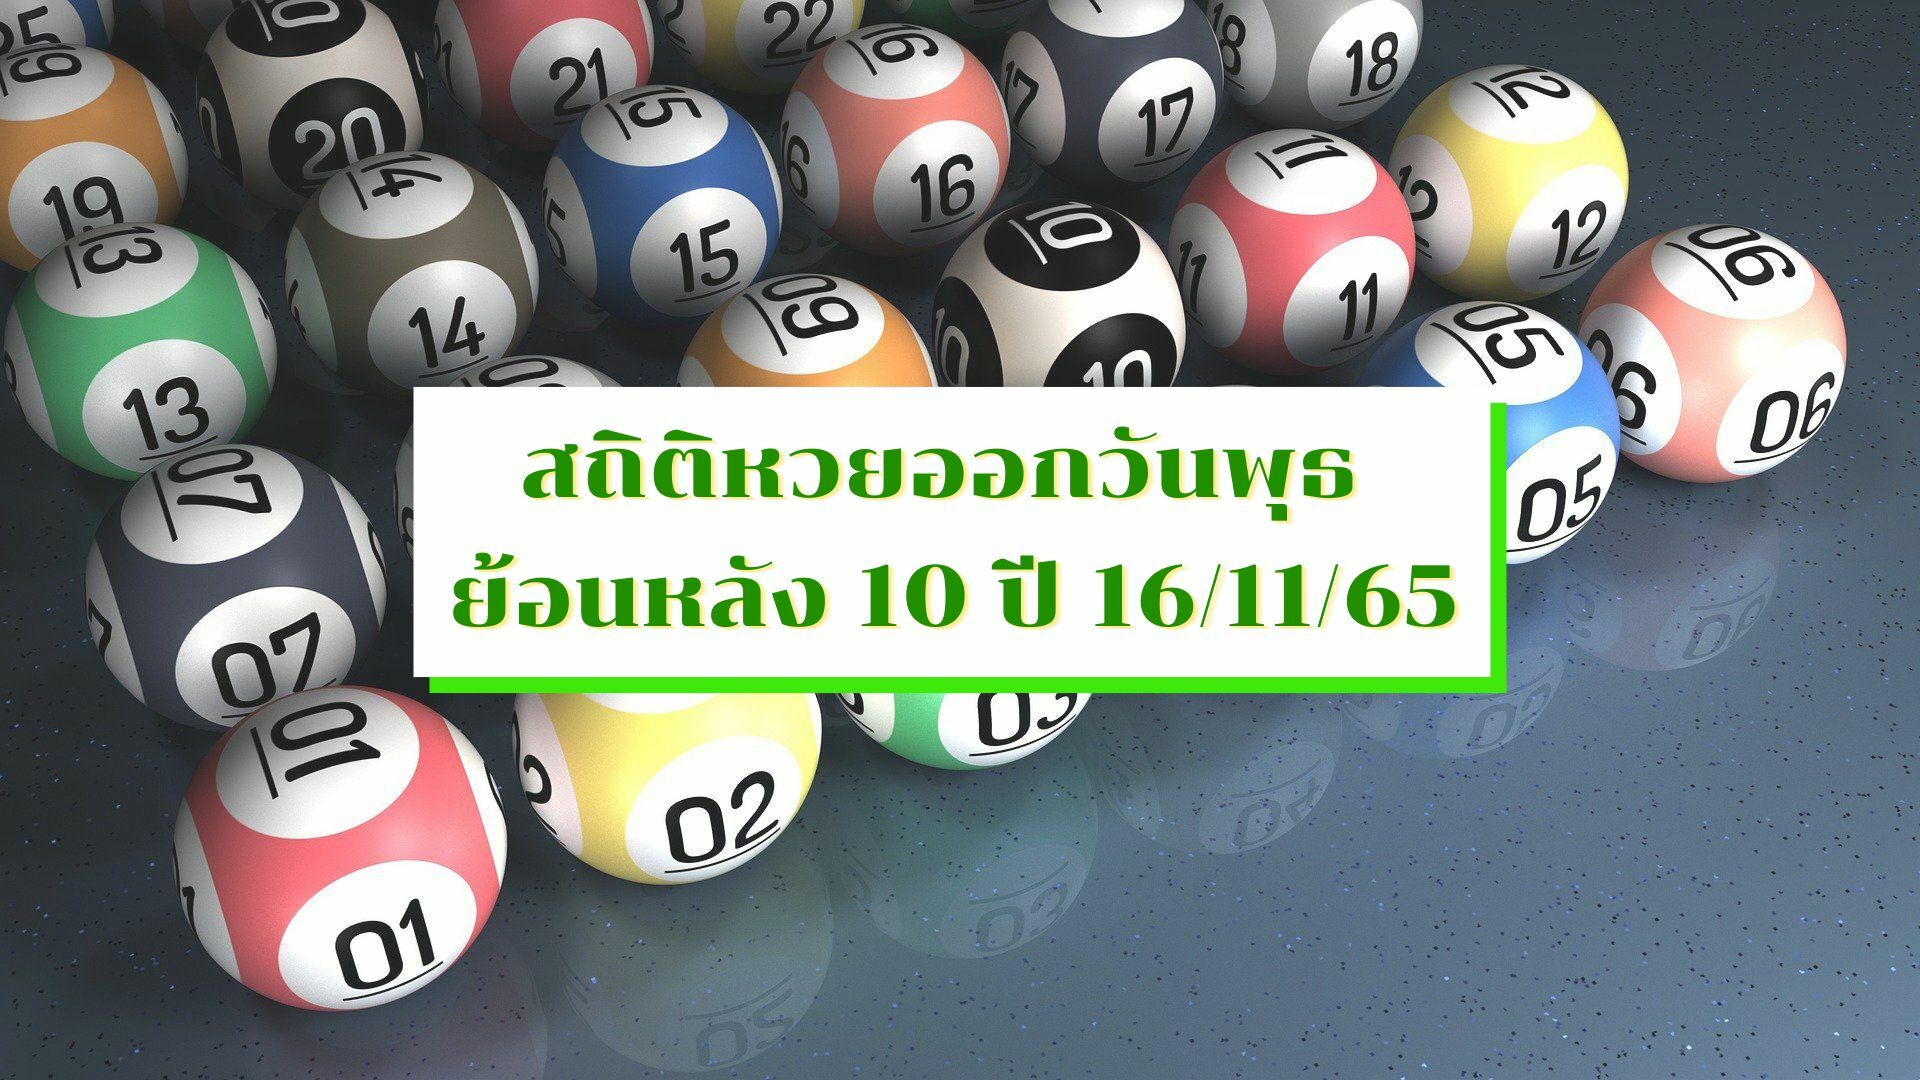 สถิติหวยออกวันพุธ ย้อนหลัง 10 ปี ลุ้นเลขเด็ด 16 พฤศจิกายน 2565 | Thaiger ข่าวไทย